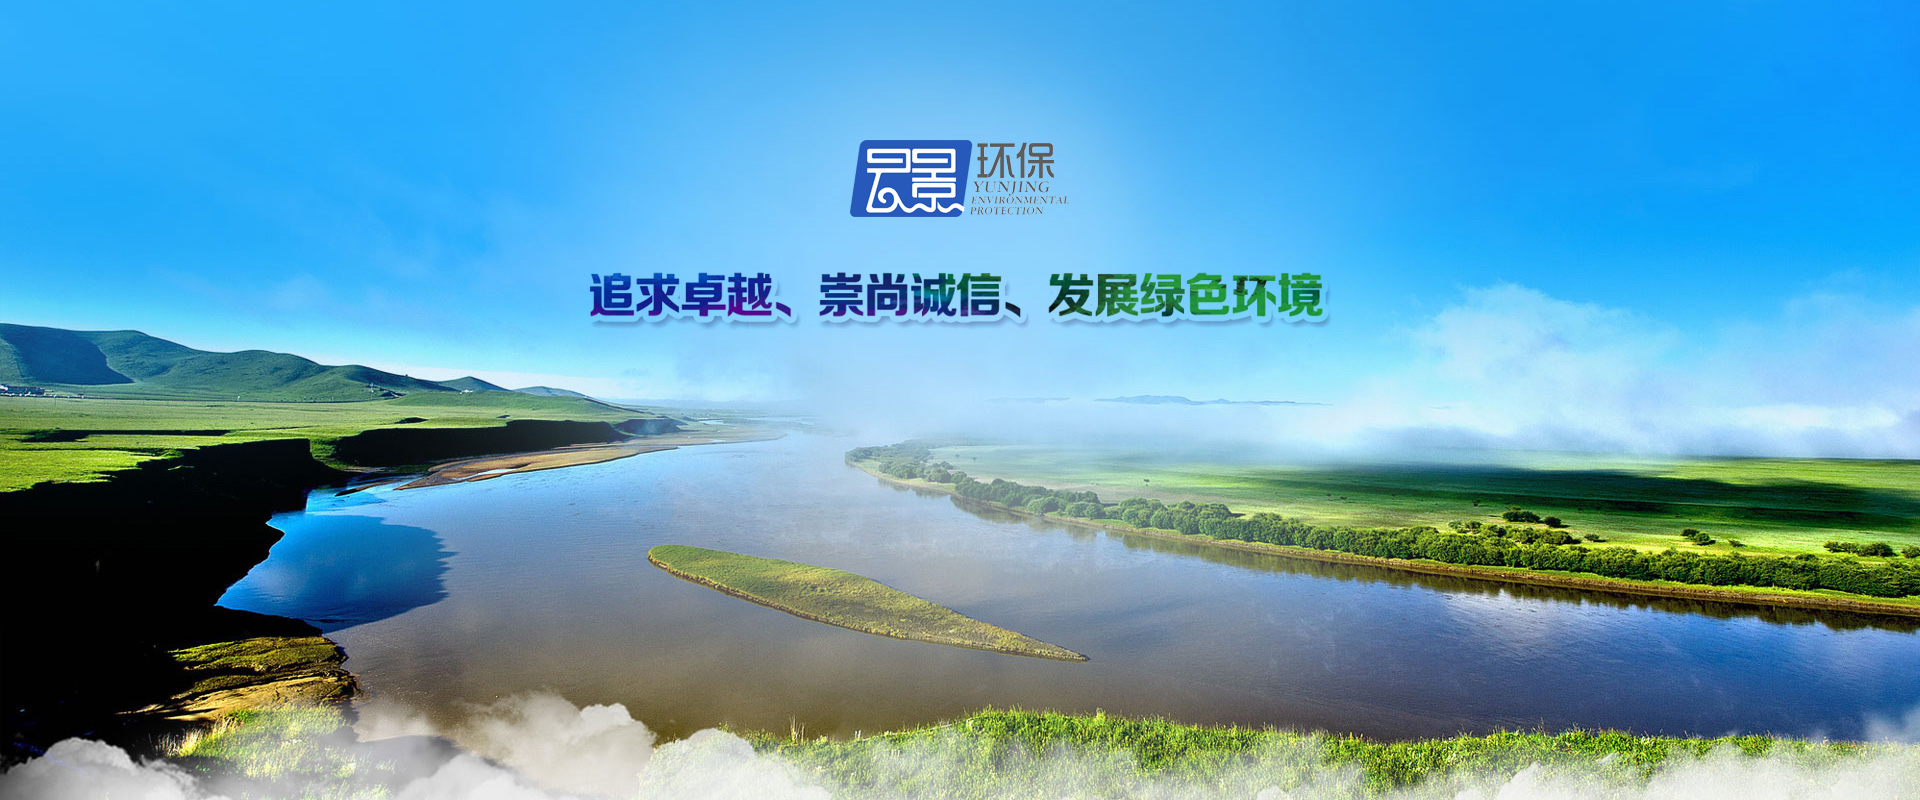 扬州云景环保科技有限公司